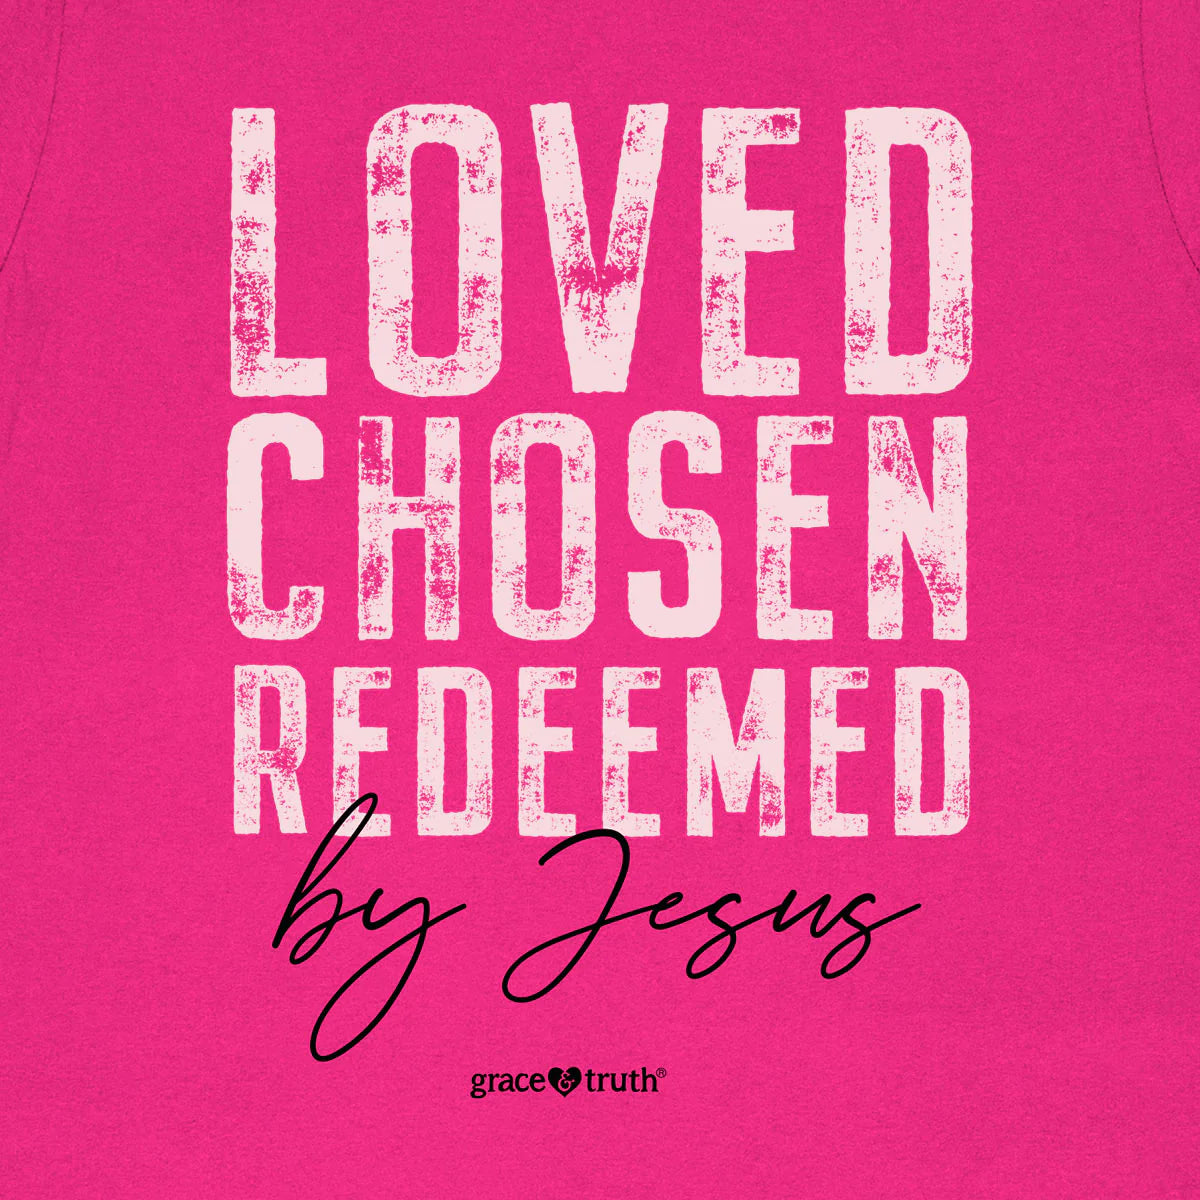 grace & truth Womens T-Shirt Loved Chosen Redeemed grace & truth® Apparel Short Sleeve T-shirts Women's